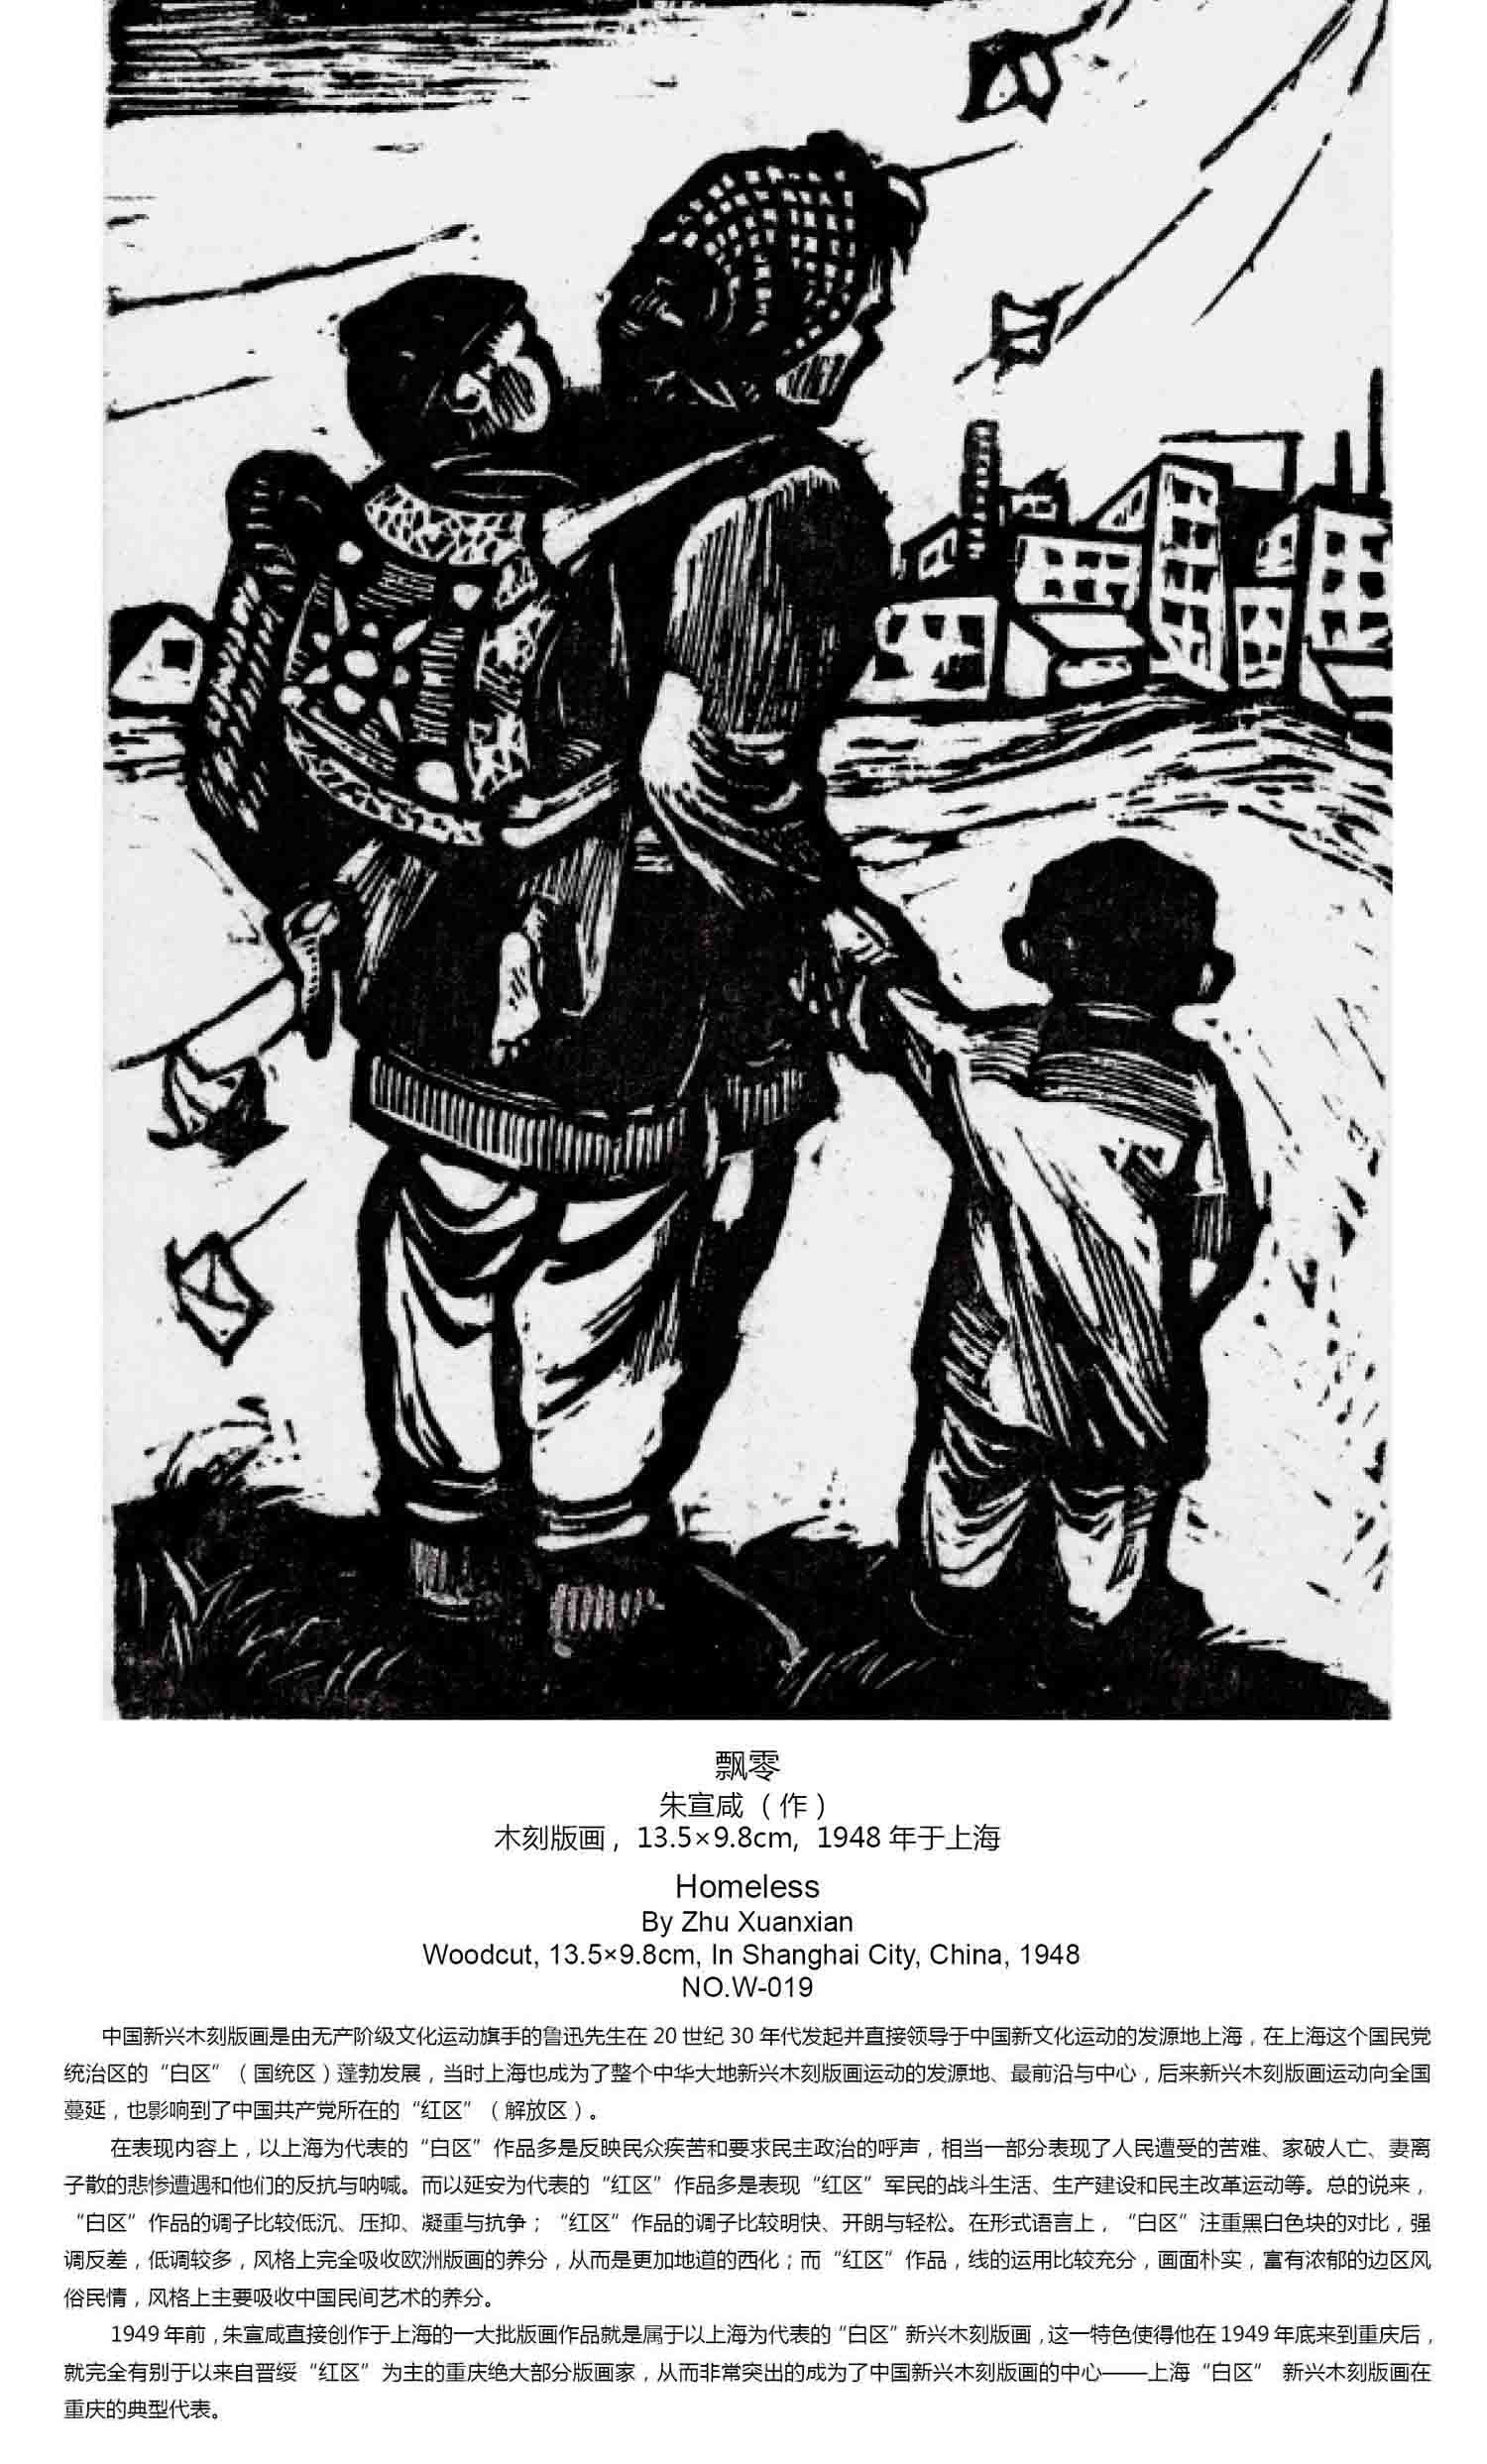 朱宣鹹版畫《飄零》，1948年作於上海